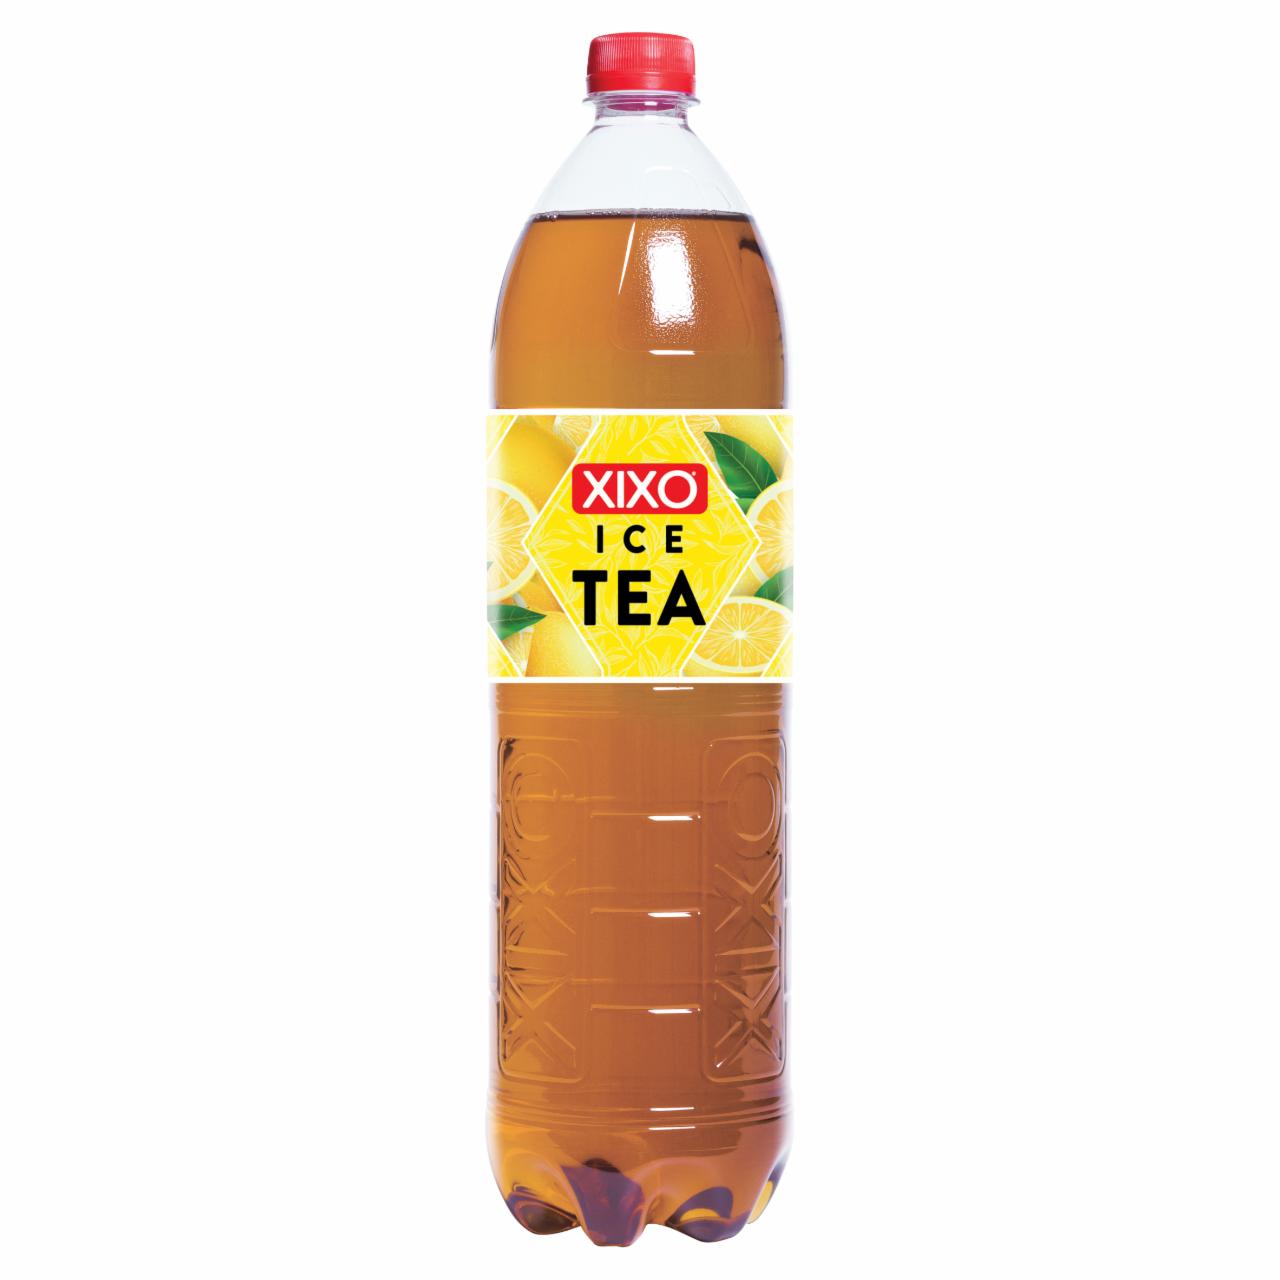 Képek - XIXO Ice Tea citromos fekete tea 1,5 l